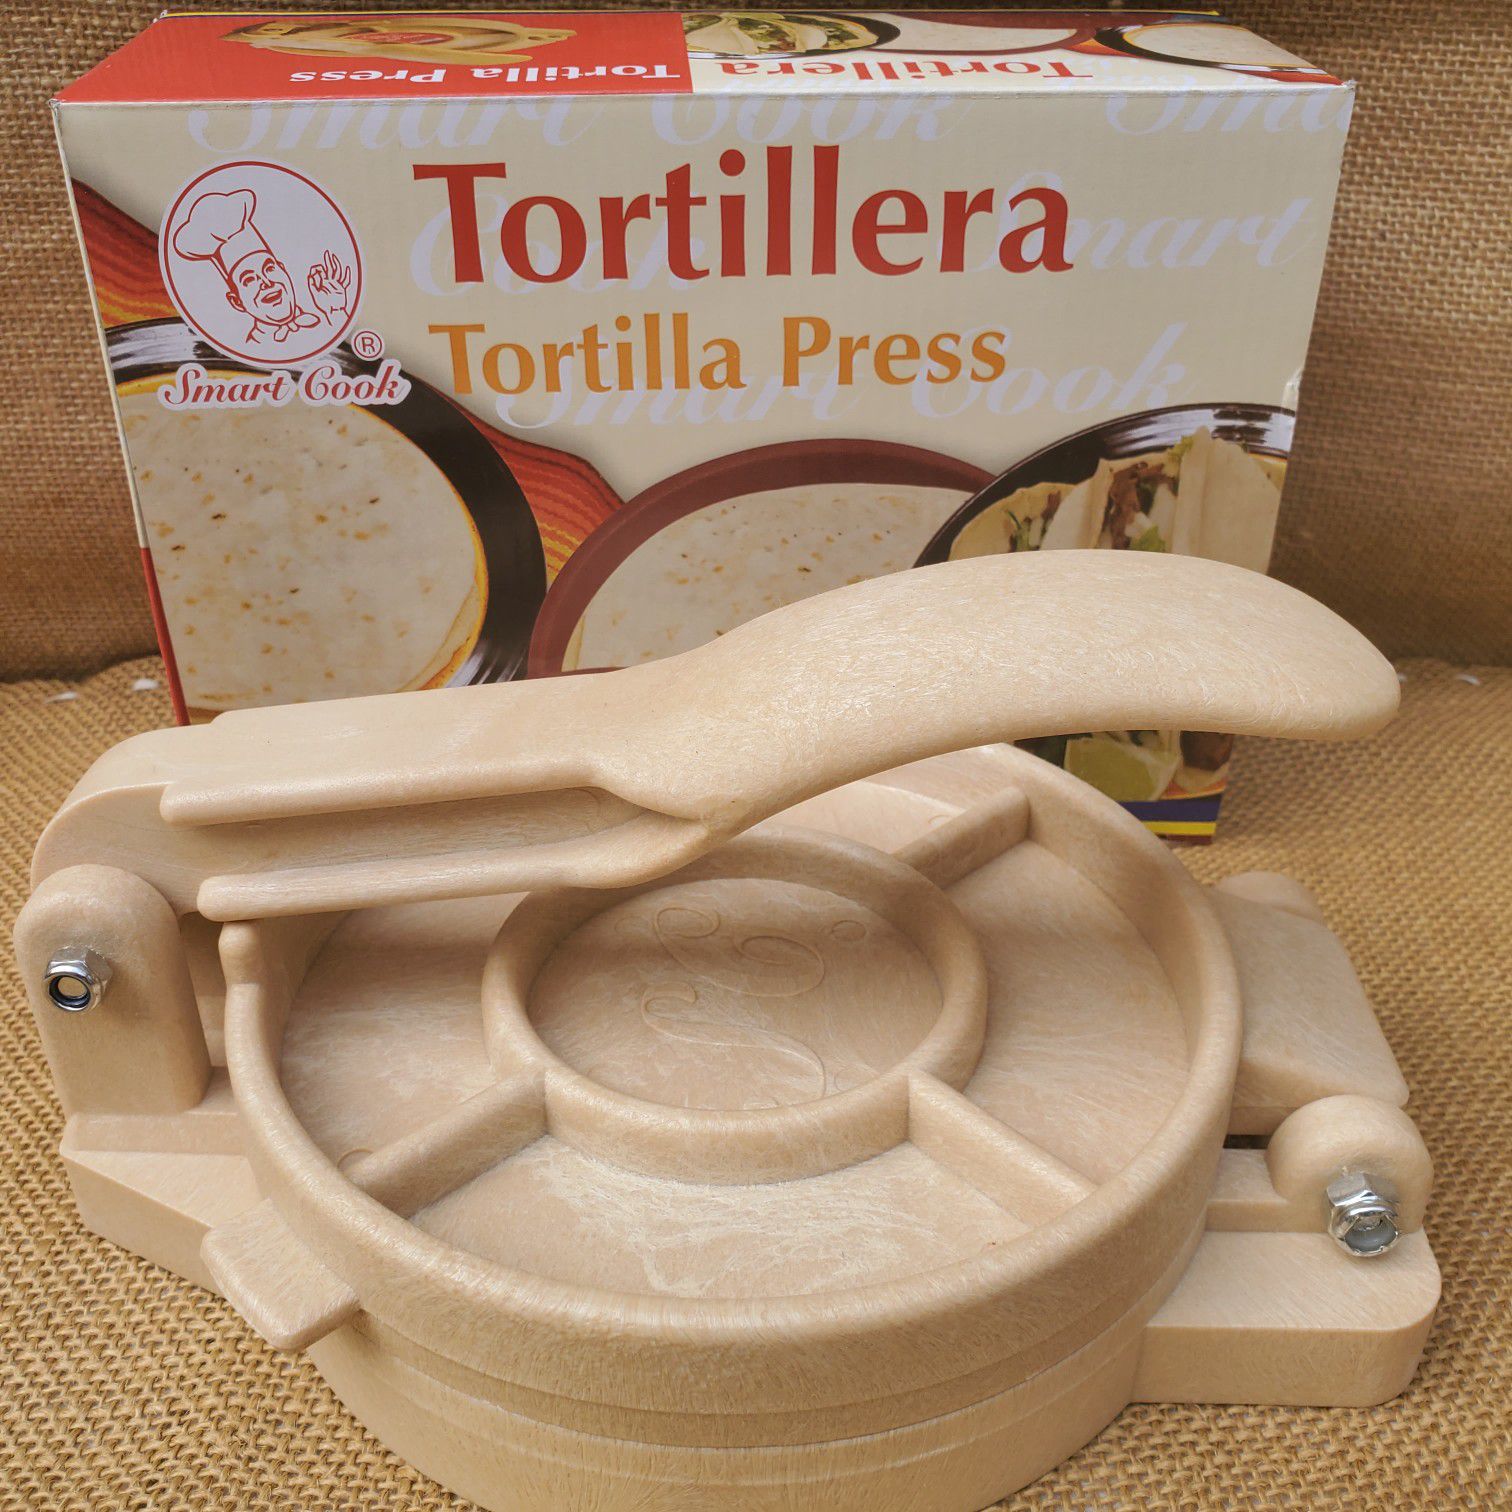 NEW 6" Plastic Tortilladora